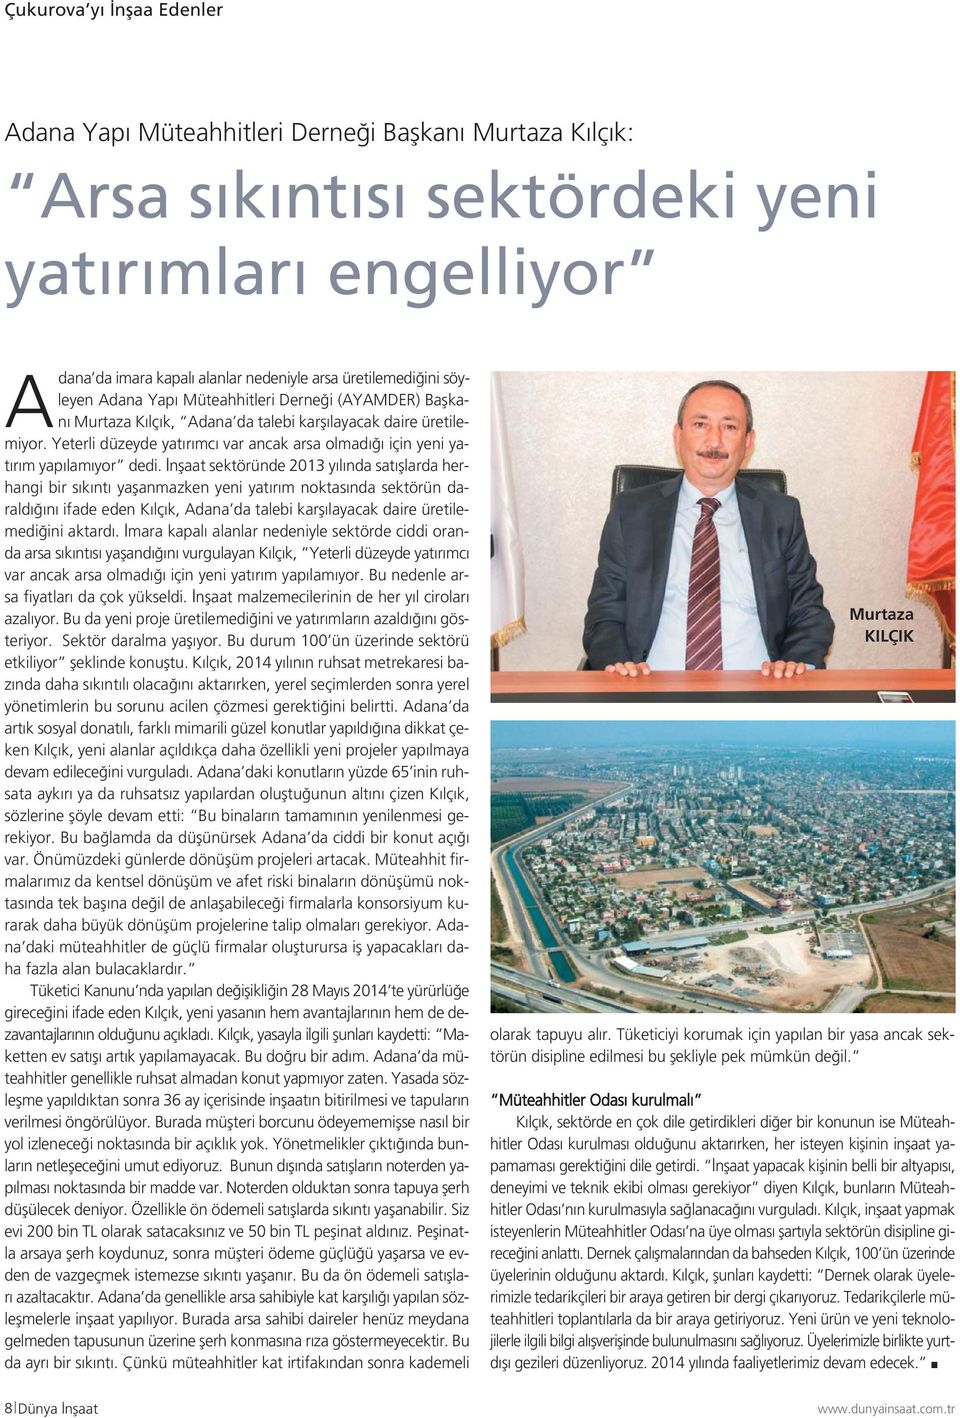 İnşaat sektöründe 2013 yılında satışlarda herhangi bir sıkıntı yaşanmazken yeni yatırım noktasında sektörün daraldığını ifade eden Kılçık, Adana da talebi karşılayacak daire üretilemediğini aktardı.